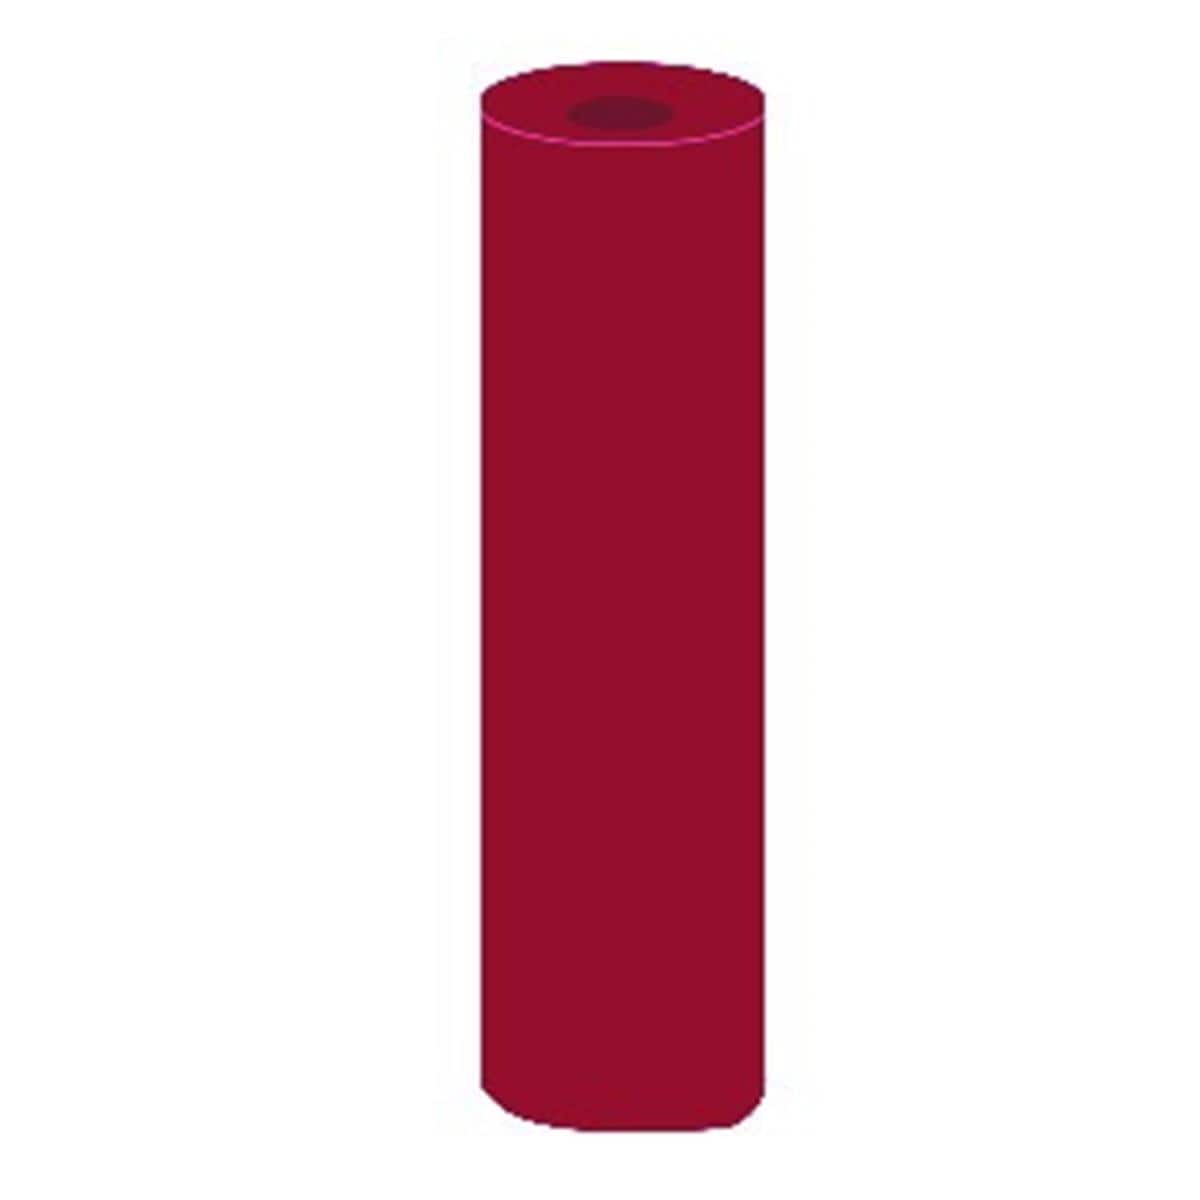 Caoutchouc DEDECO - Cylindre - rouge 4594 - La bote de 100